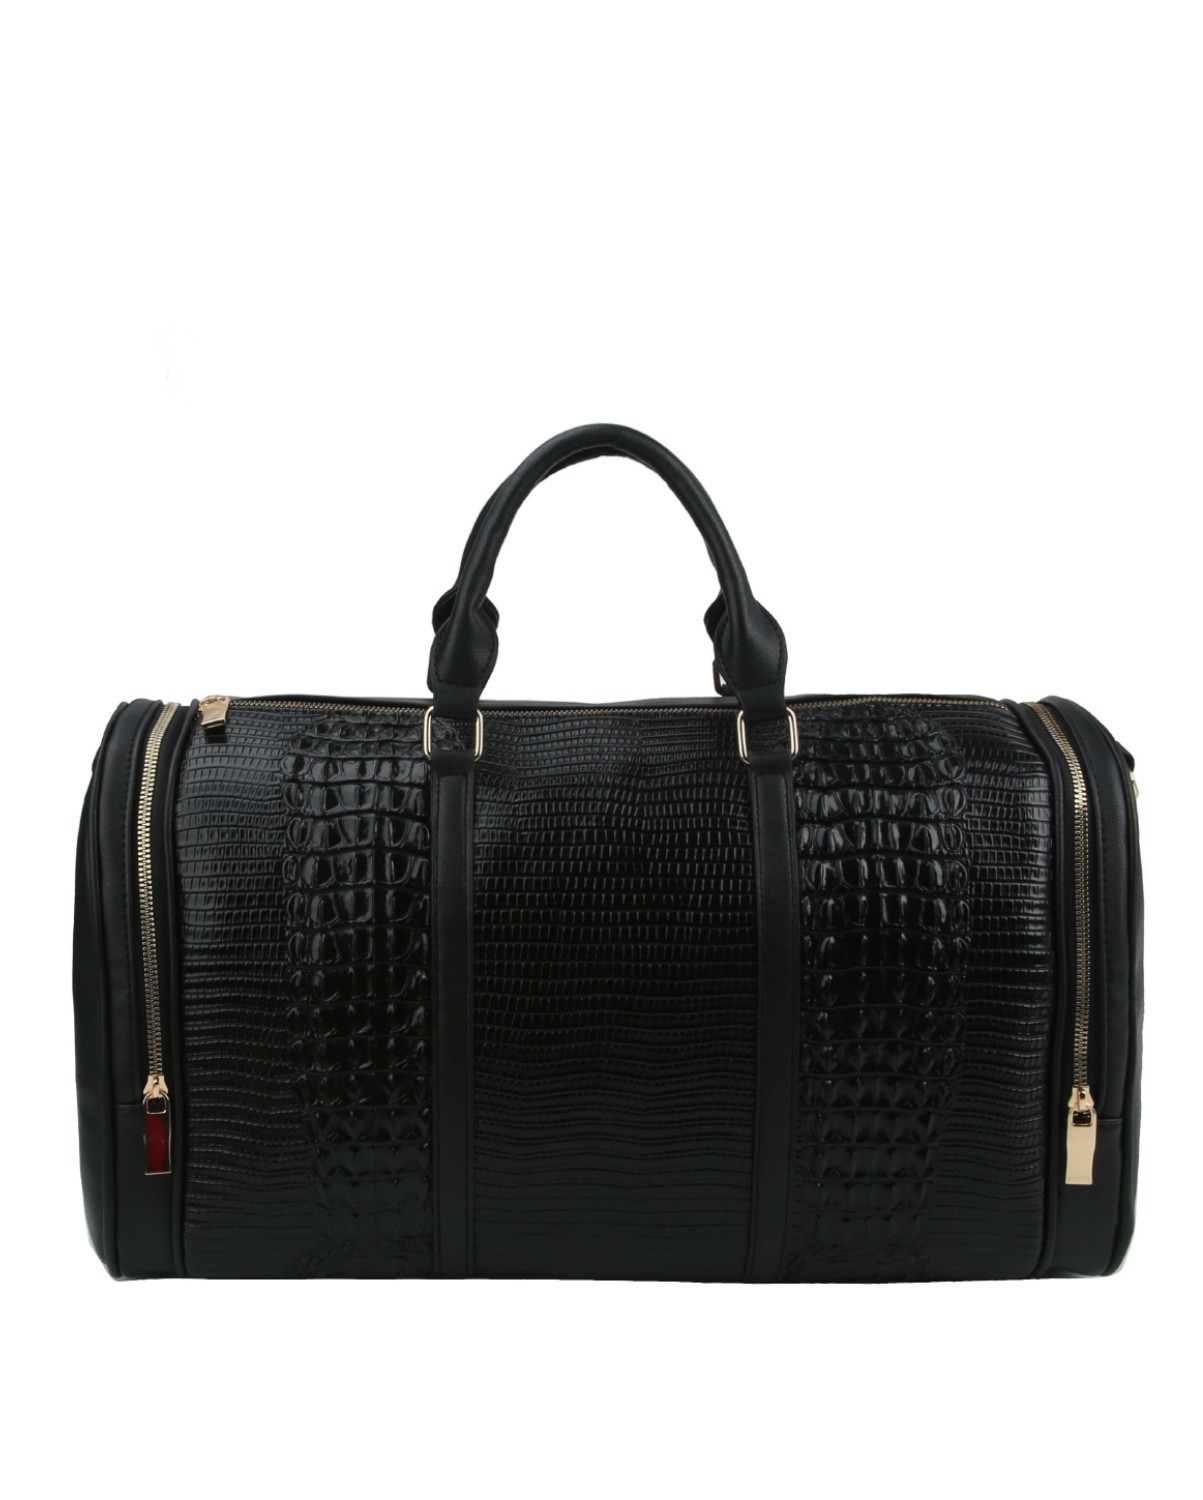 WHOLESALE CROCODILE LIKE BACKPACK > Boutique Handbags > Mezon Handbags